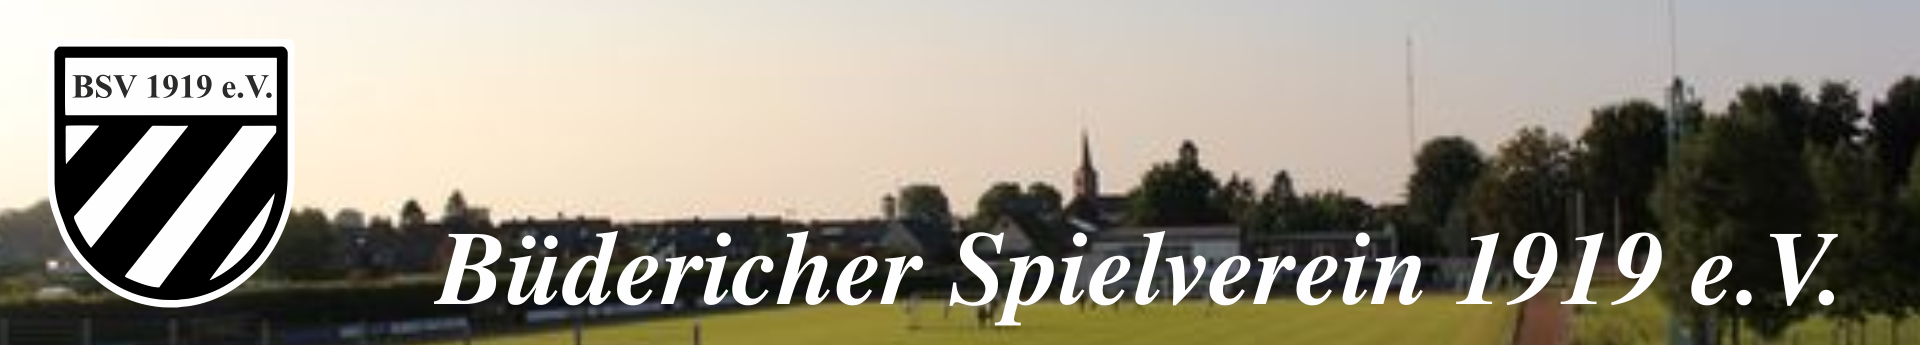 Büdericher Spielverein Title Image